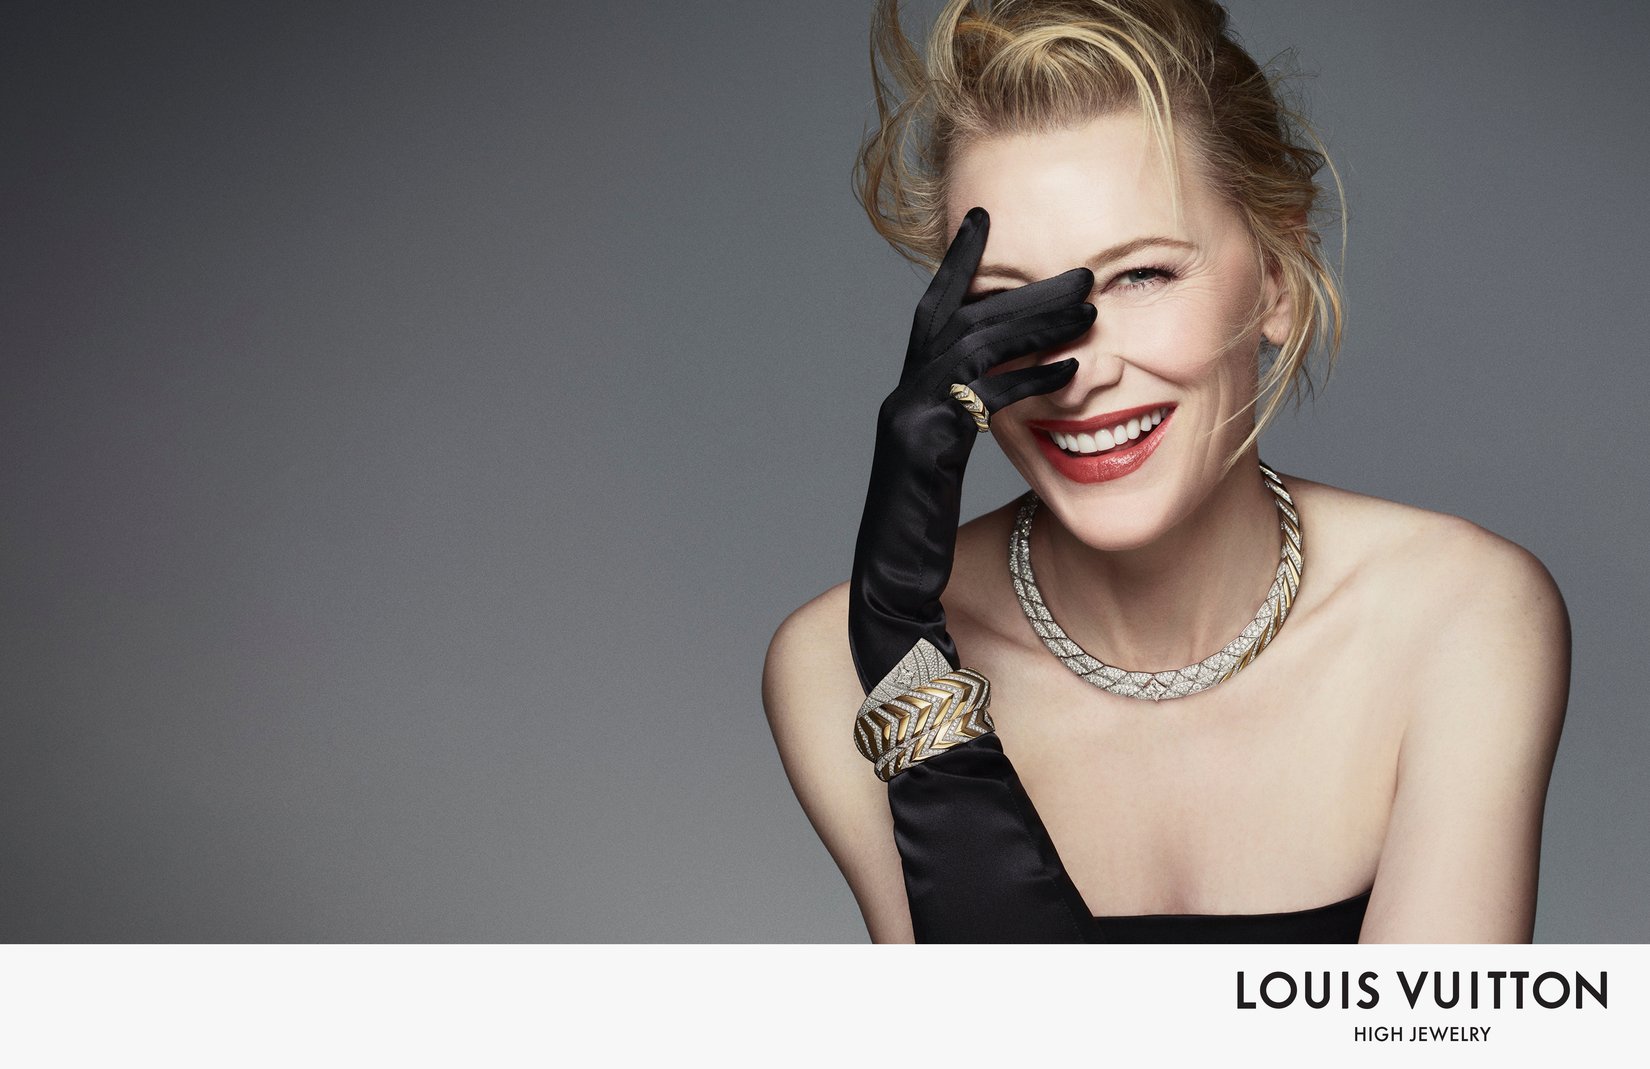 Louis Vuitton: Fantastical Jewels By Francesca Amfitheatrof